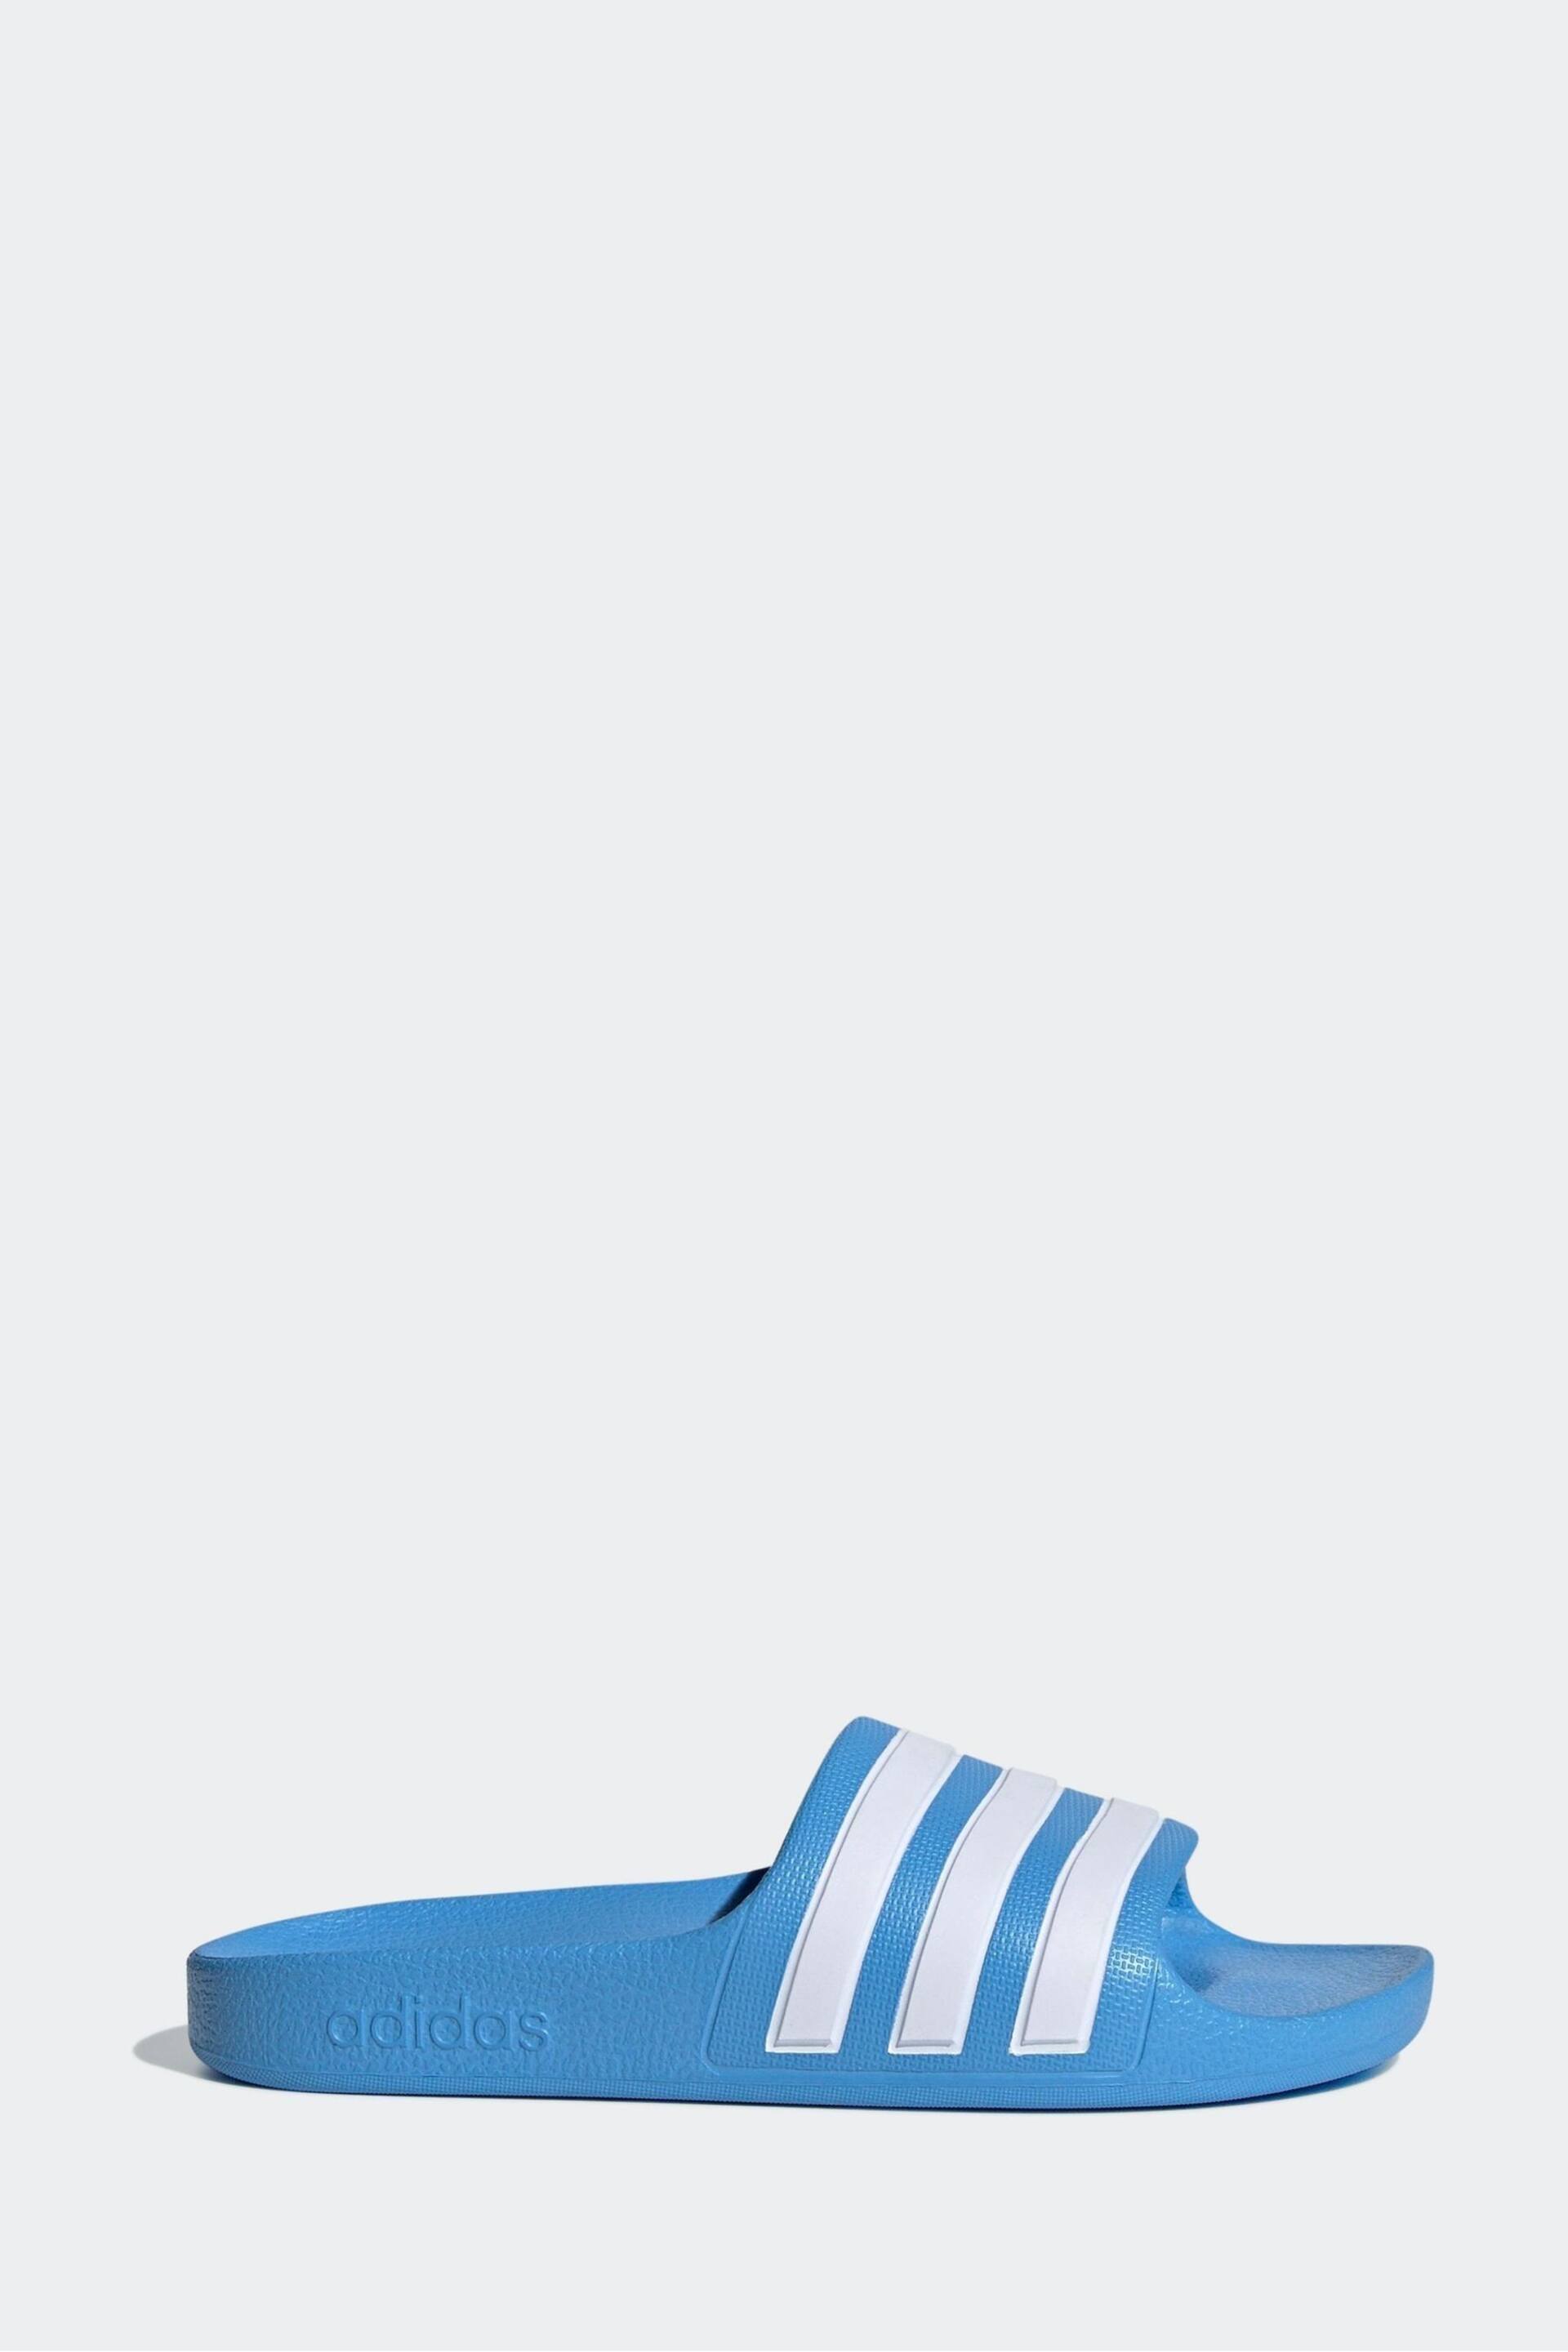 adidas Blue Adilette Youth Kids Sliders - Image 10 of 11